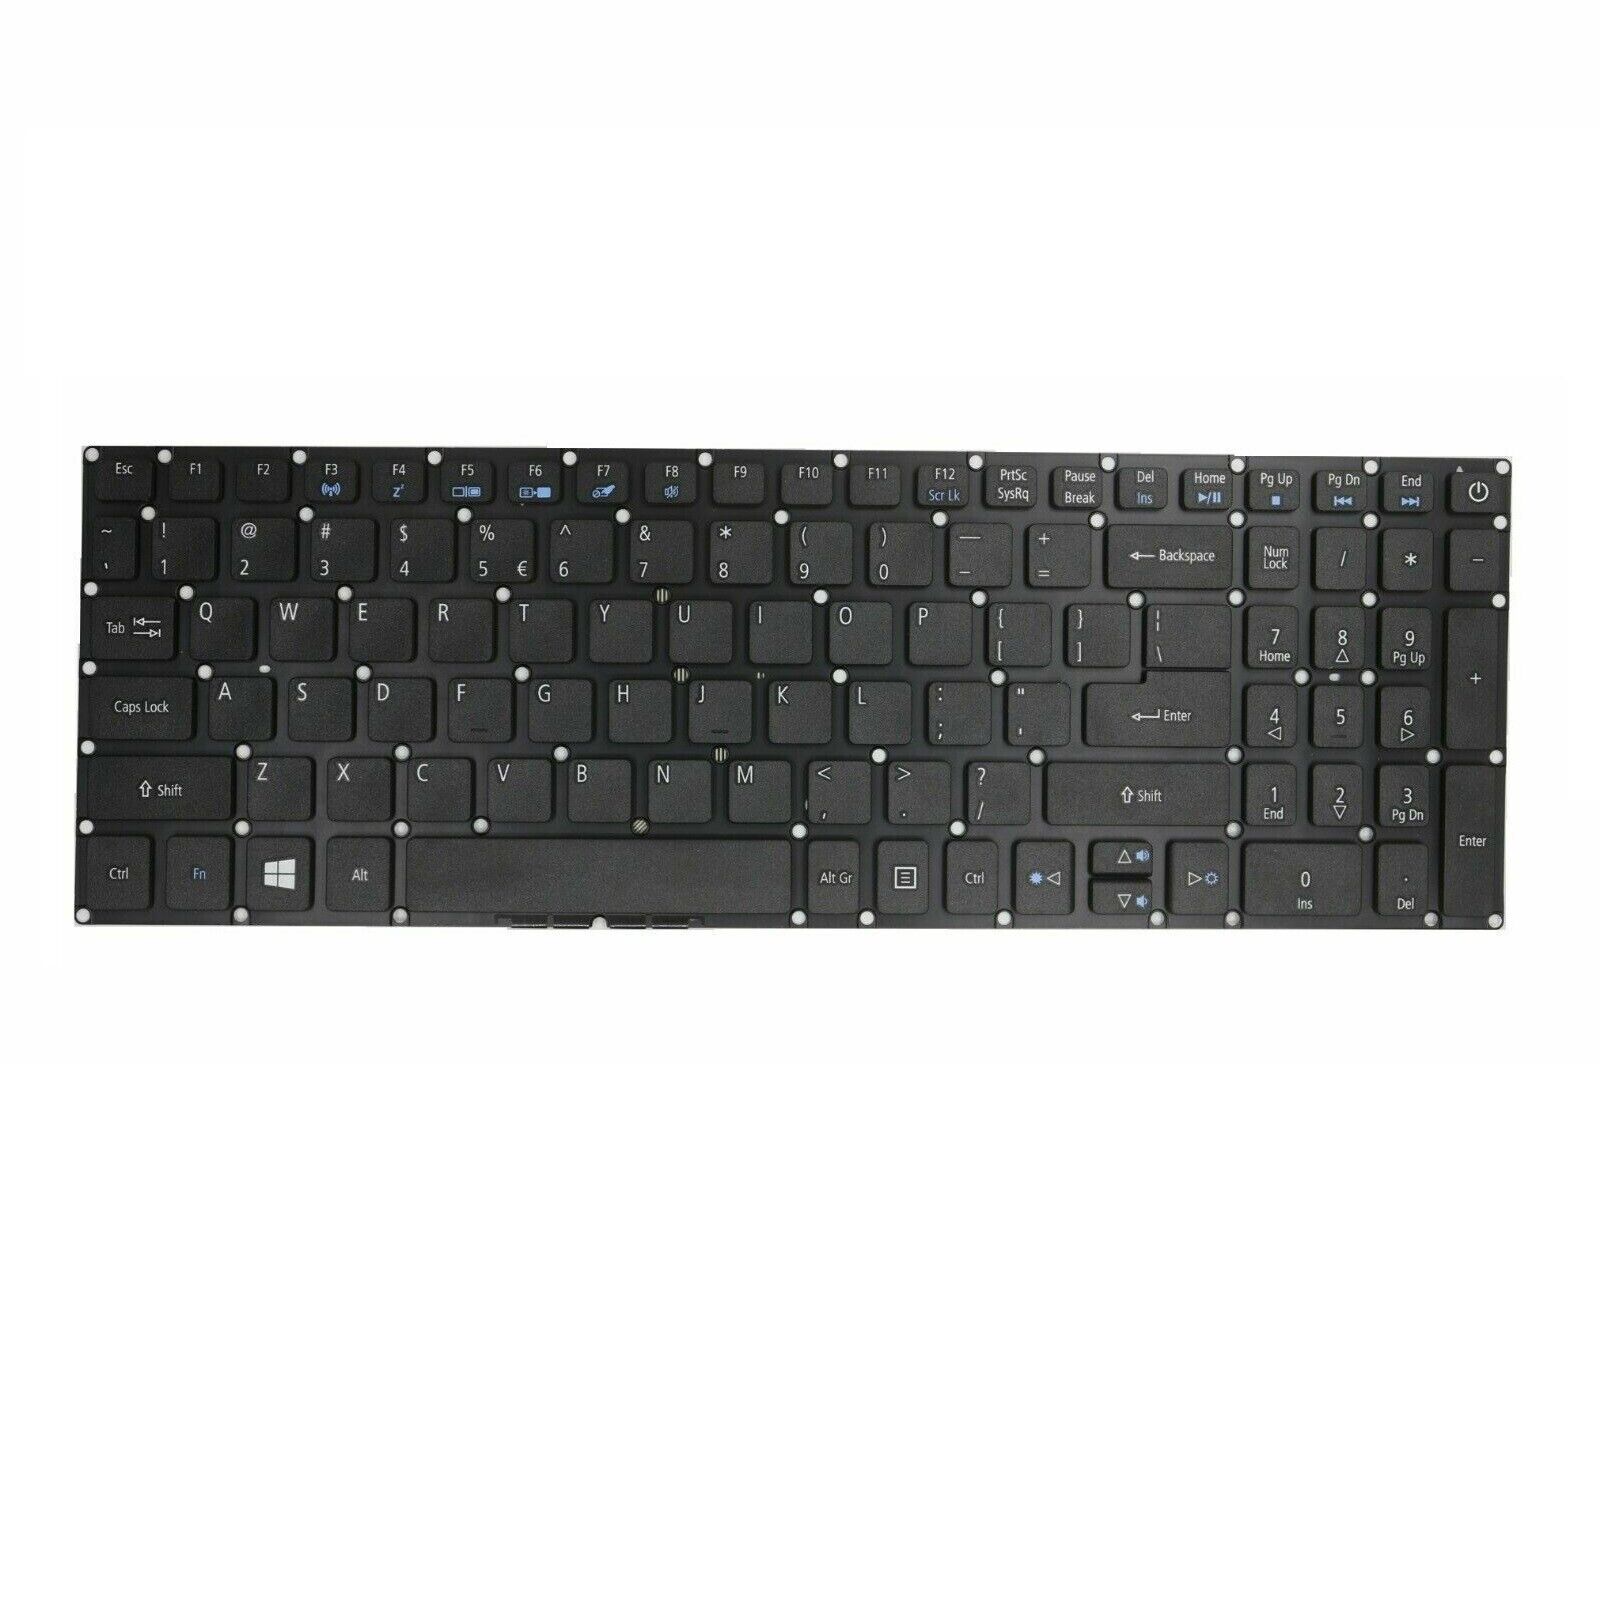 For Acer Aspire E5-573g-7239 E5-573g-72uf E5-573g-74q5 E5-573g-75b3 US Keyboard